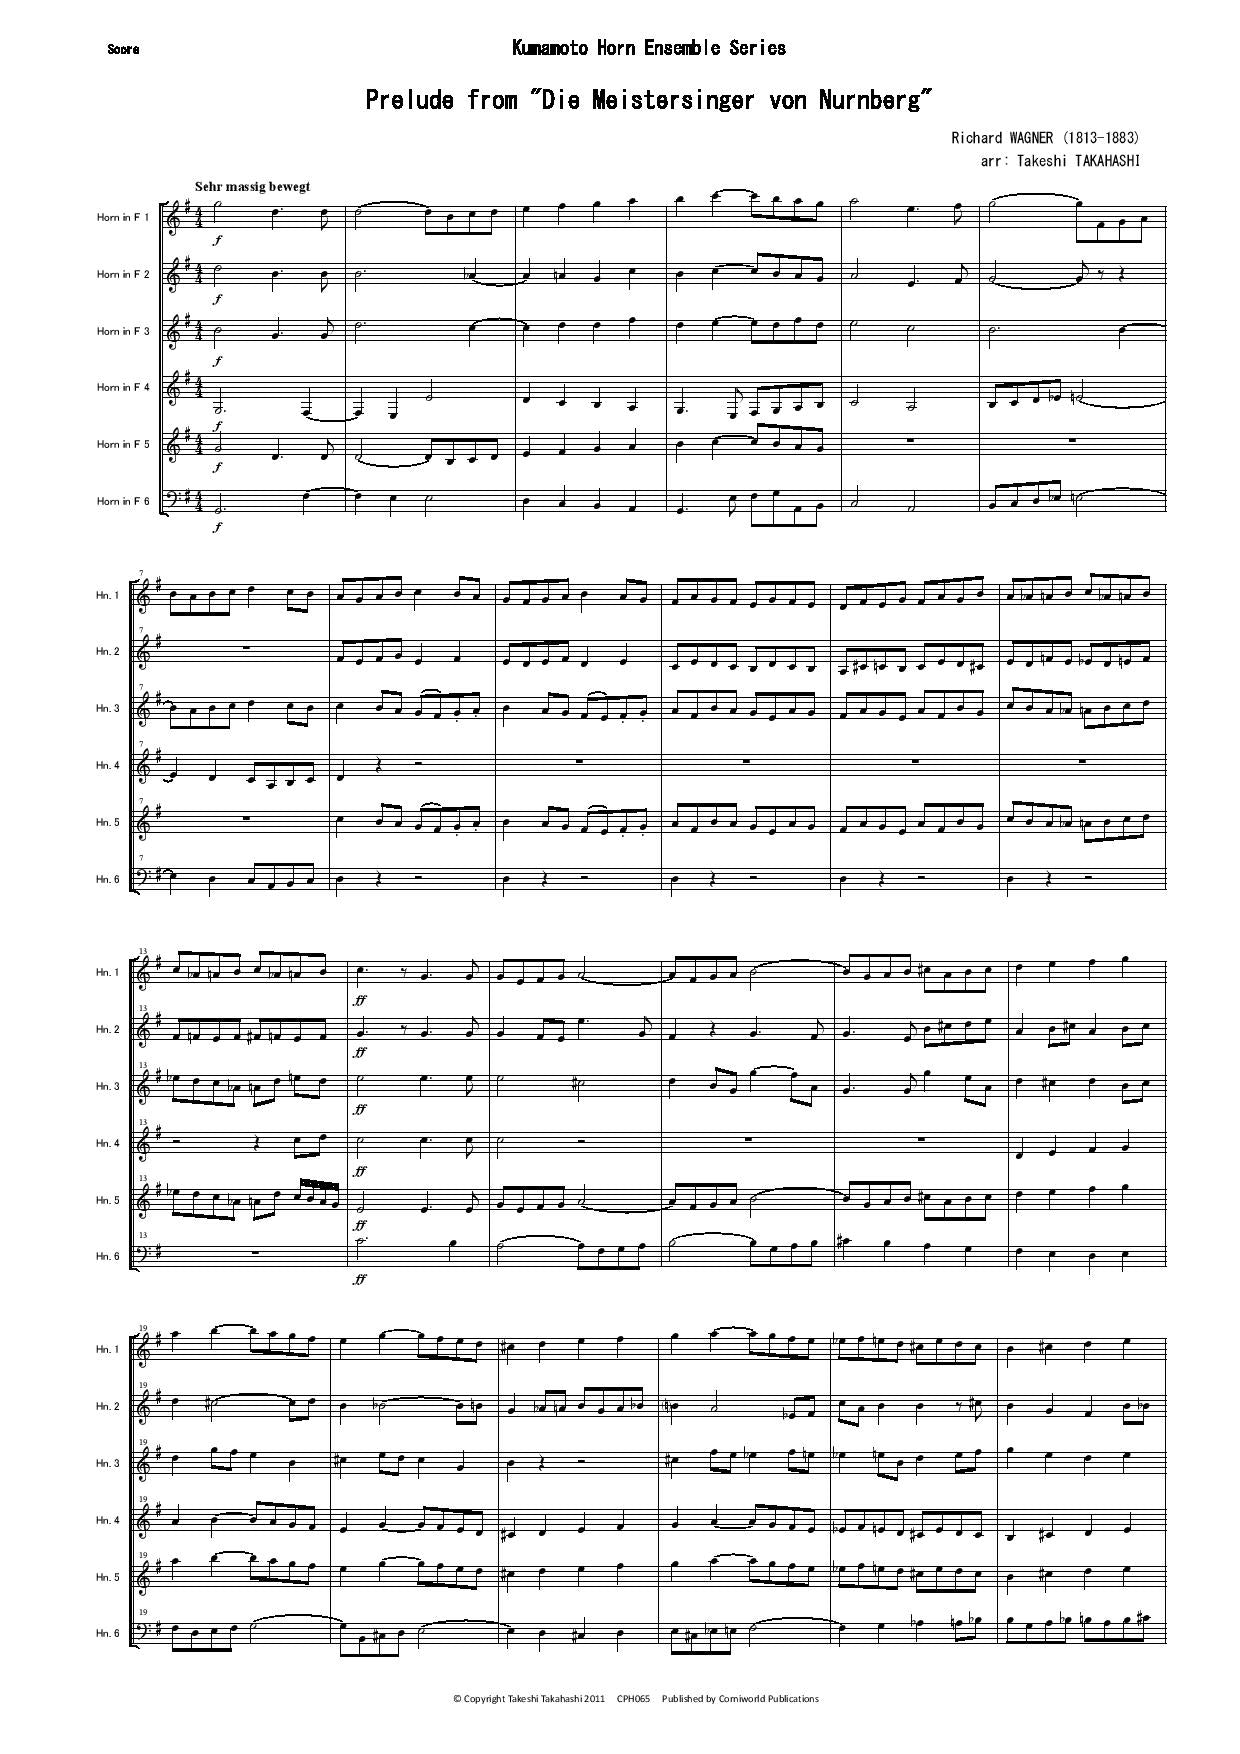 Prelude - Die Meistersinger von Nurnberg CPH065